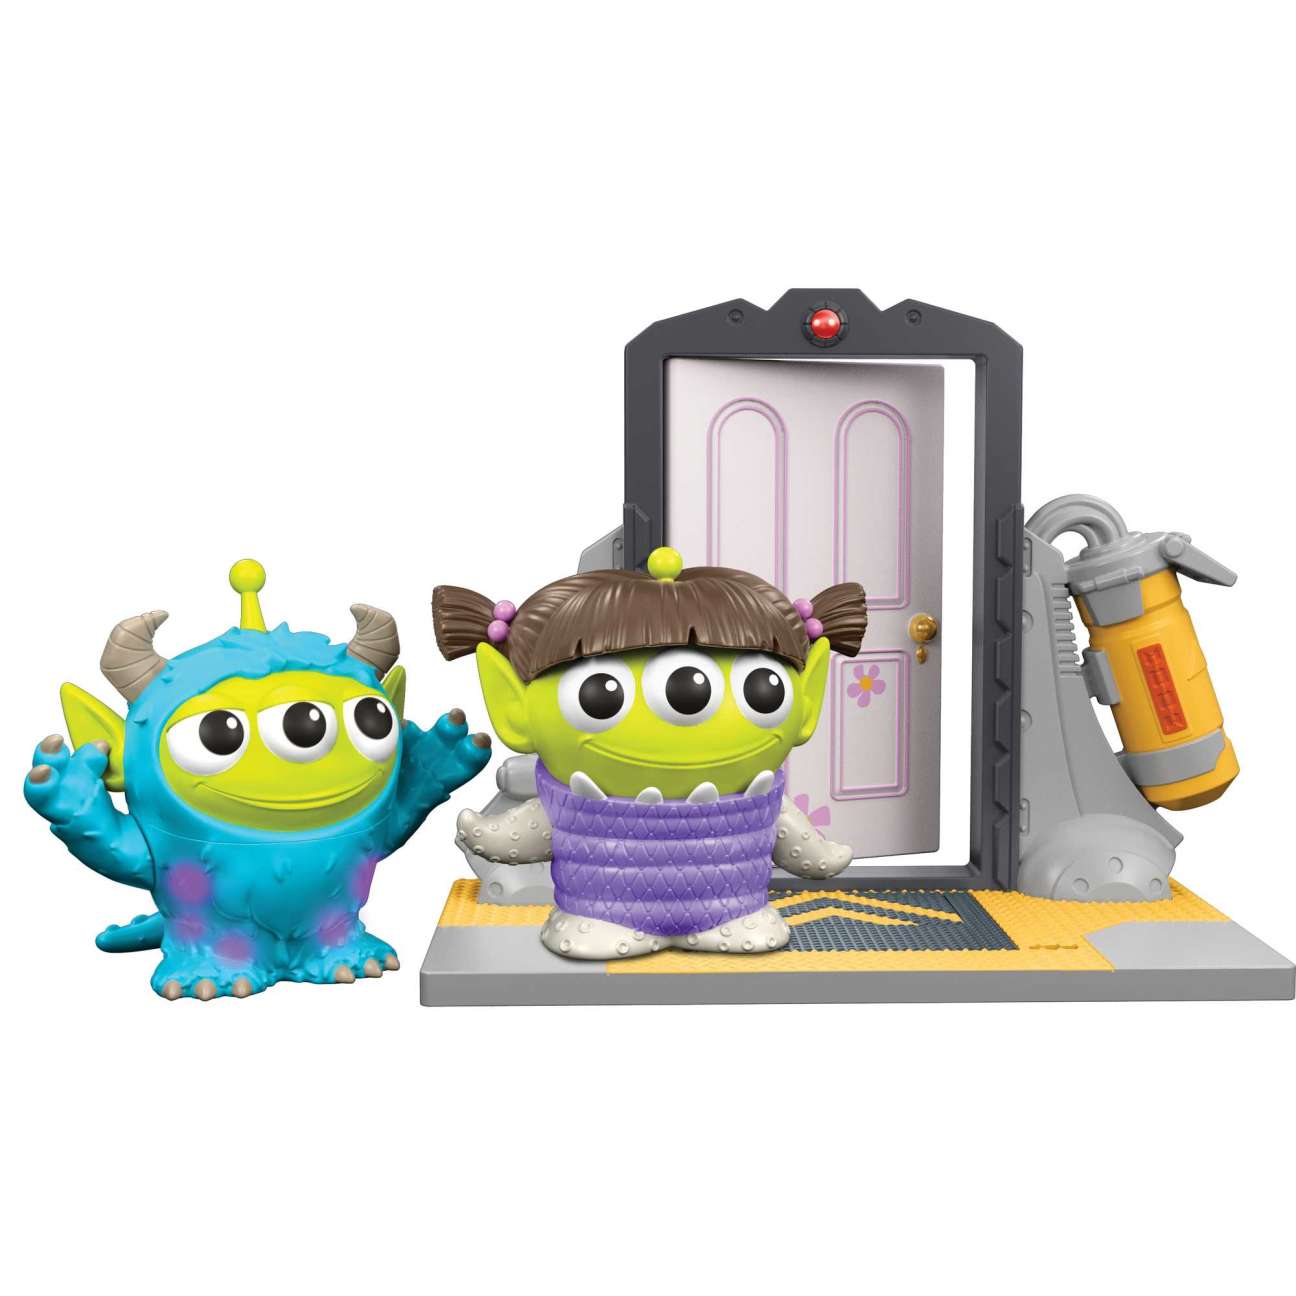 Disney Pixar Toy Story Alien Remix: Monsters Inc Door Collector Pack